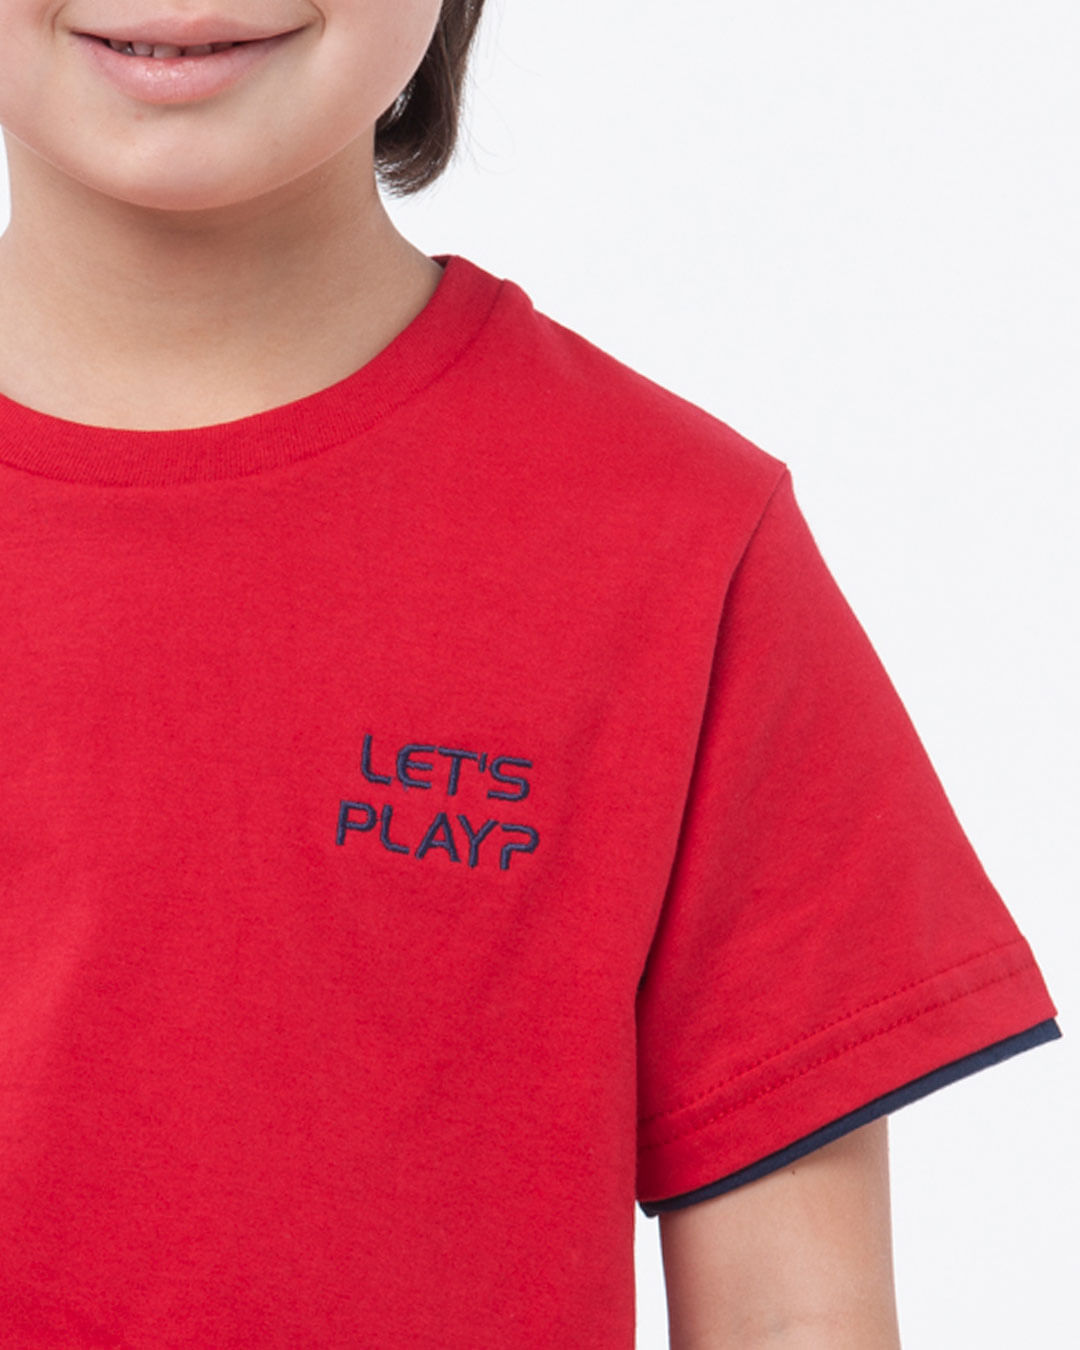 Camiseta-Infantil-Malha-Manga-Curta-Let-S-Play-Vermelho